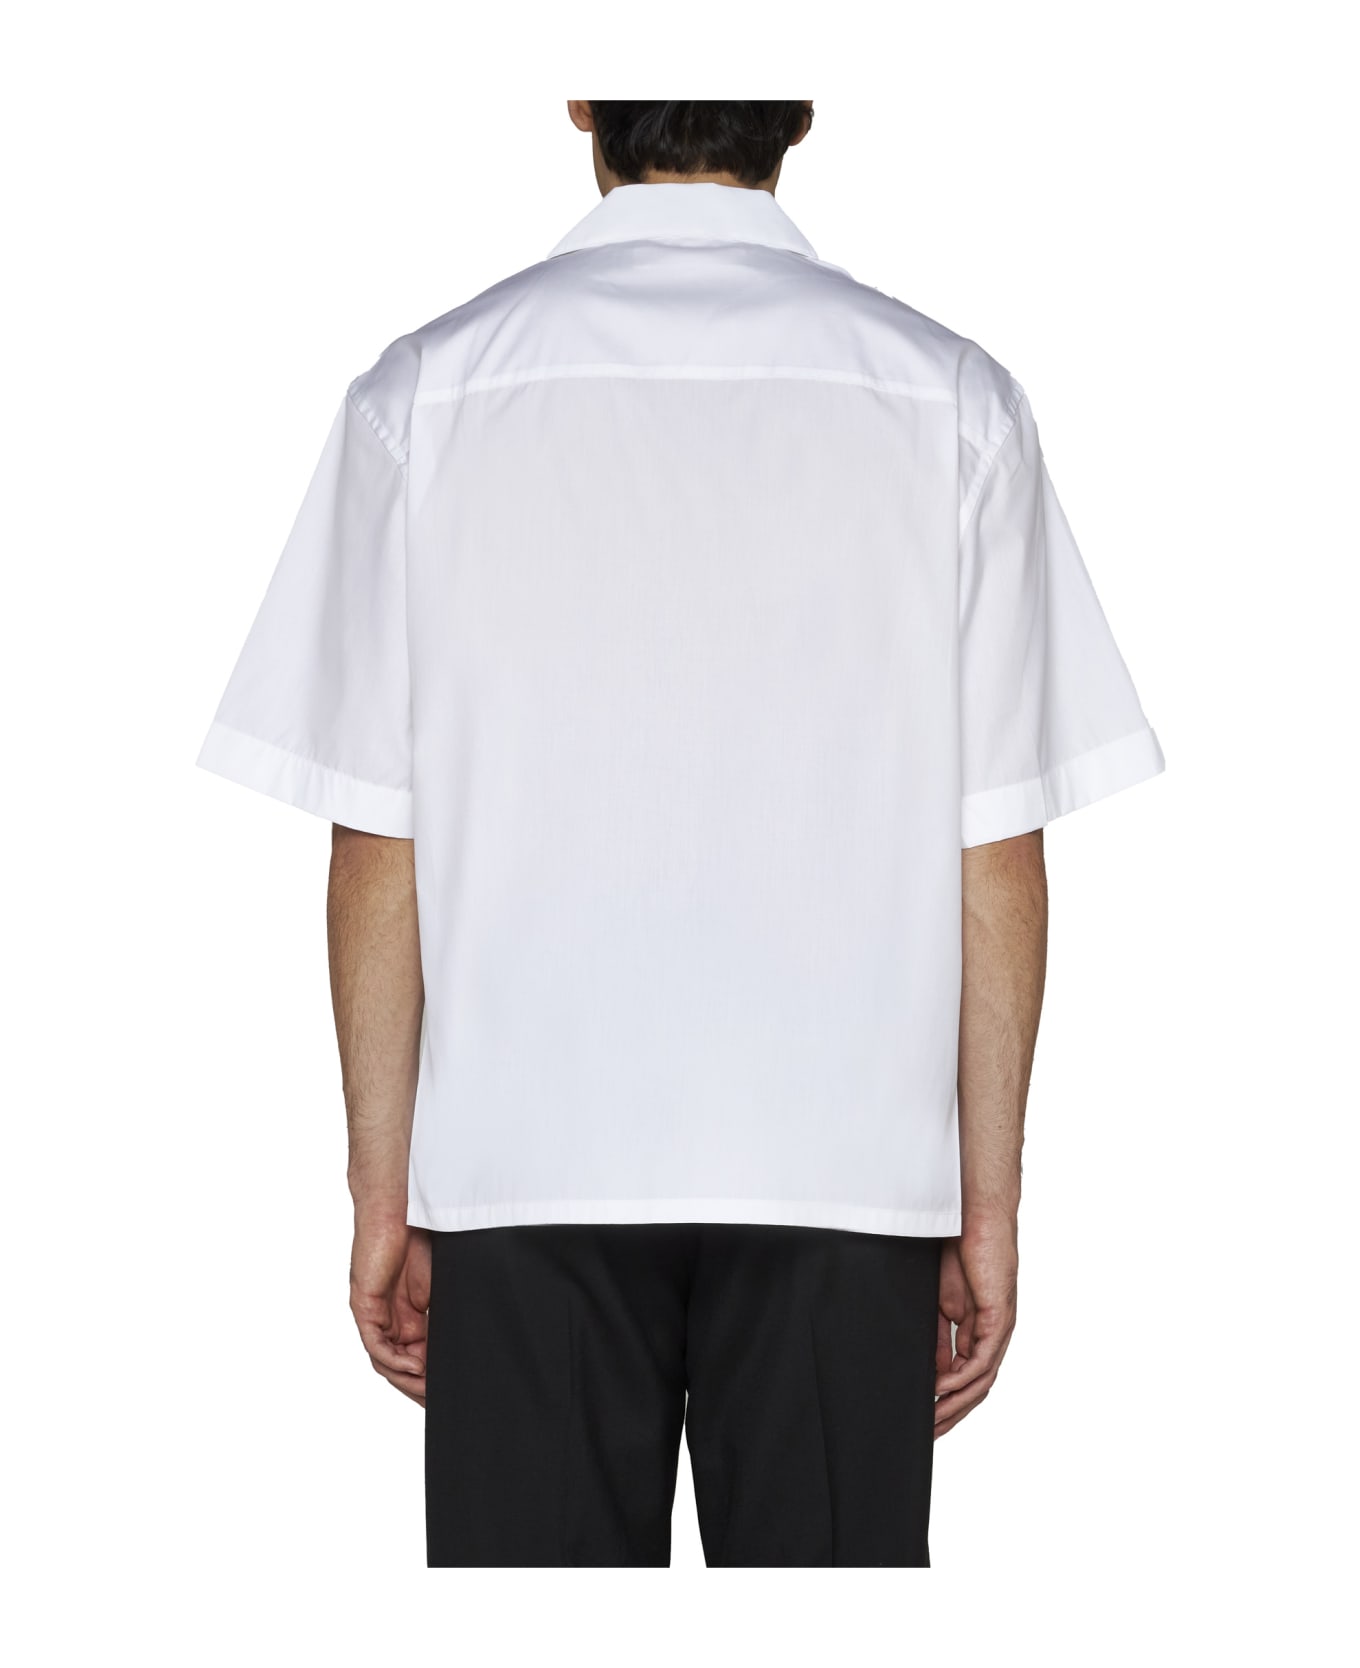 Marni Shirt - Lily white